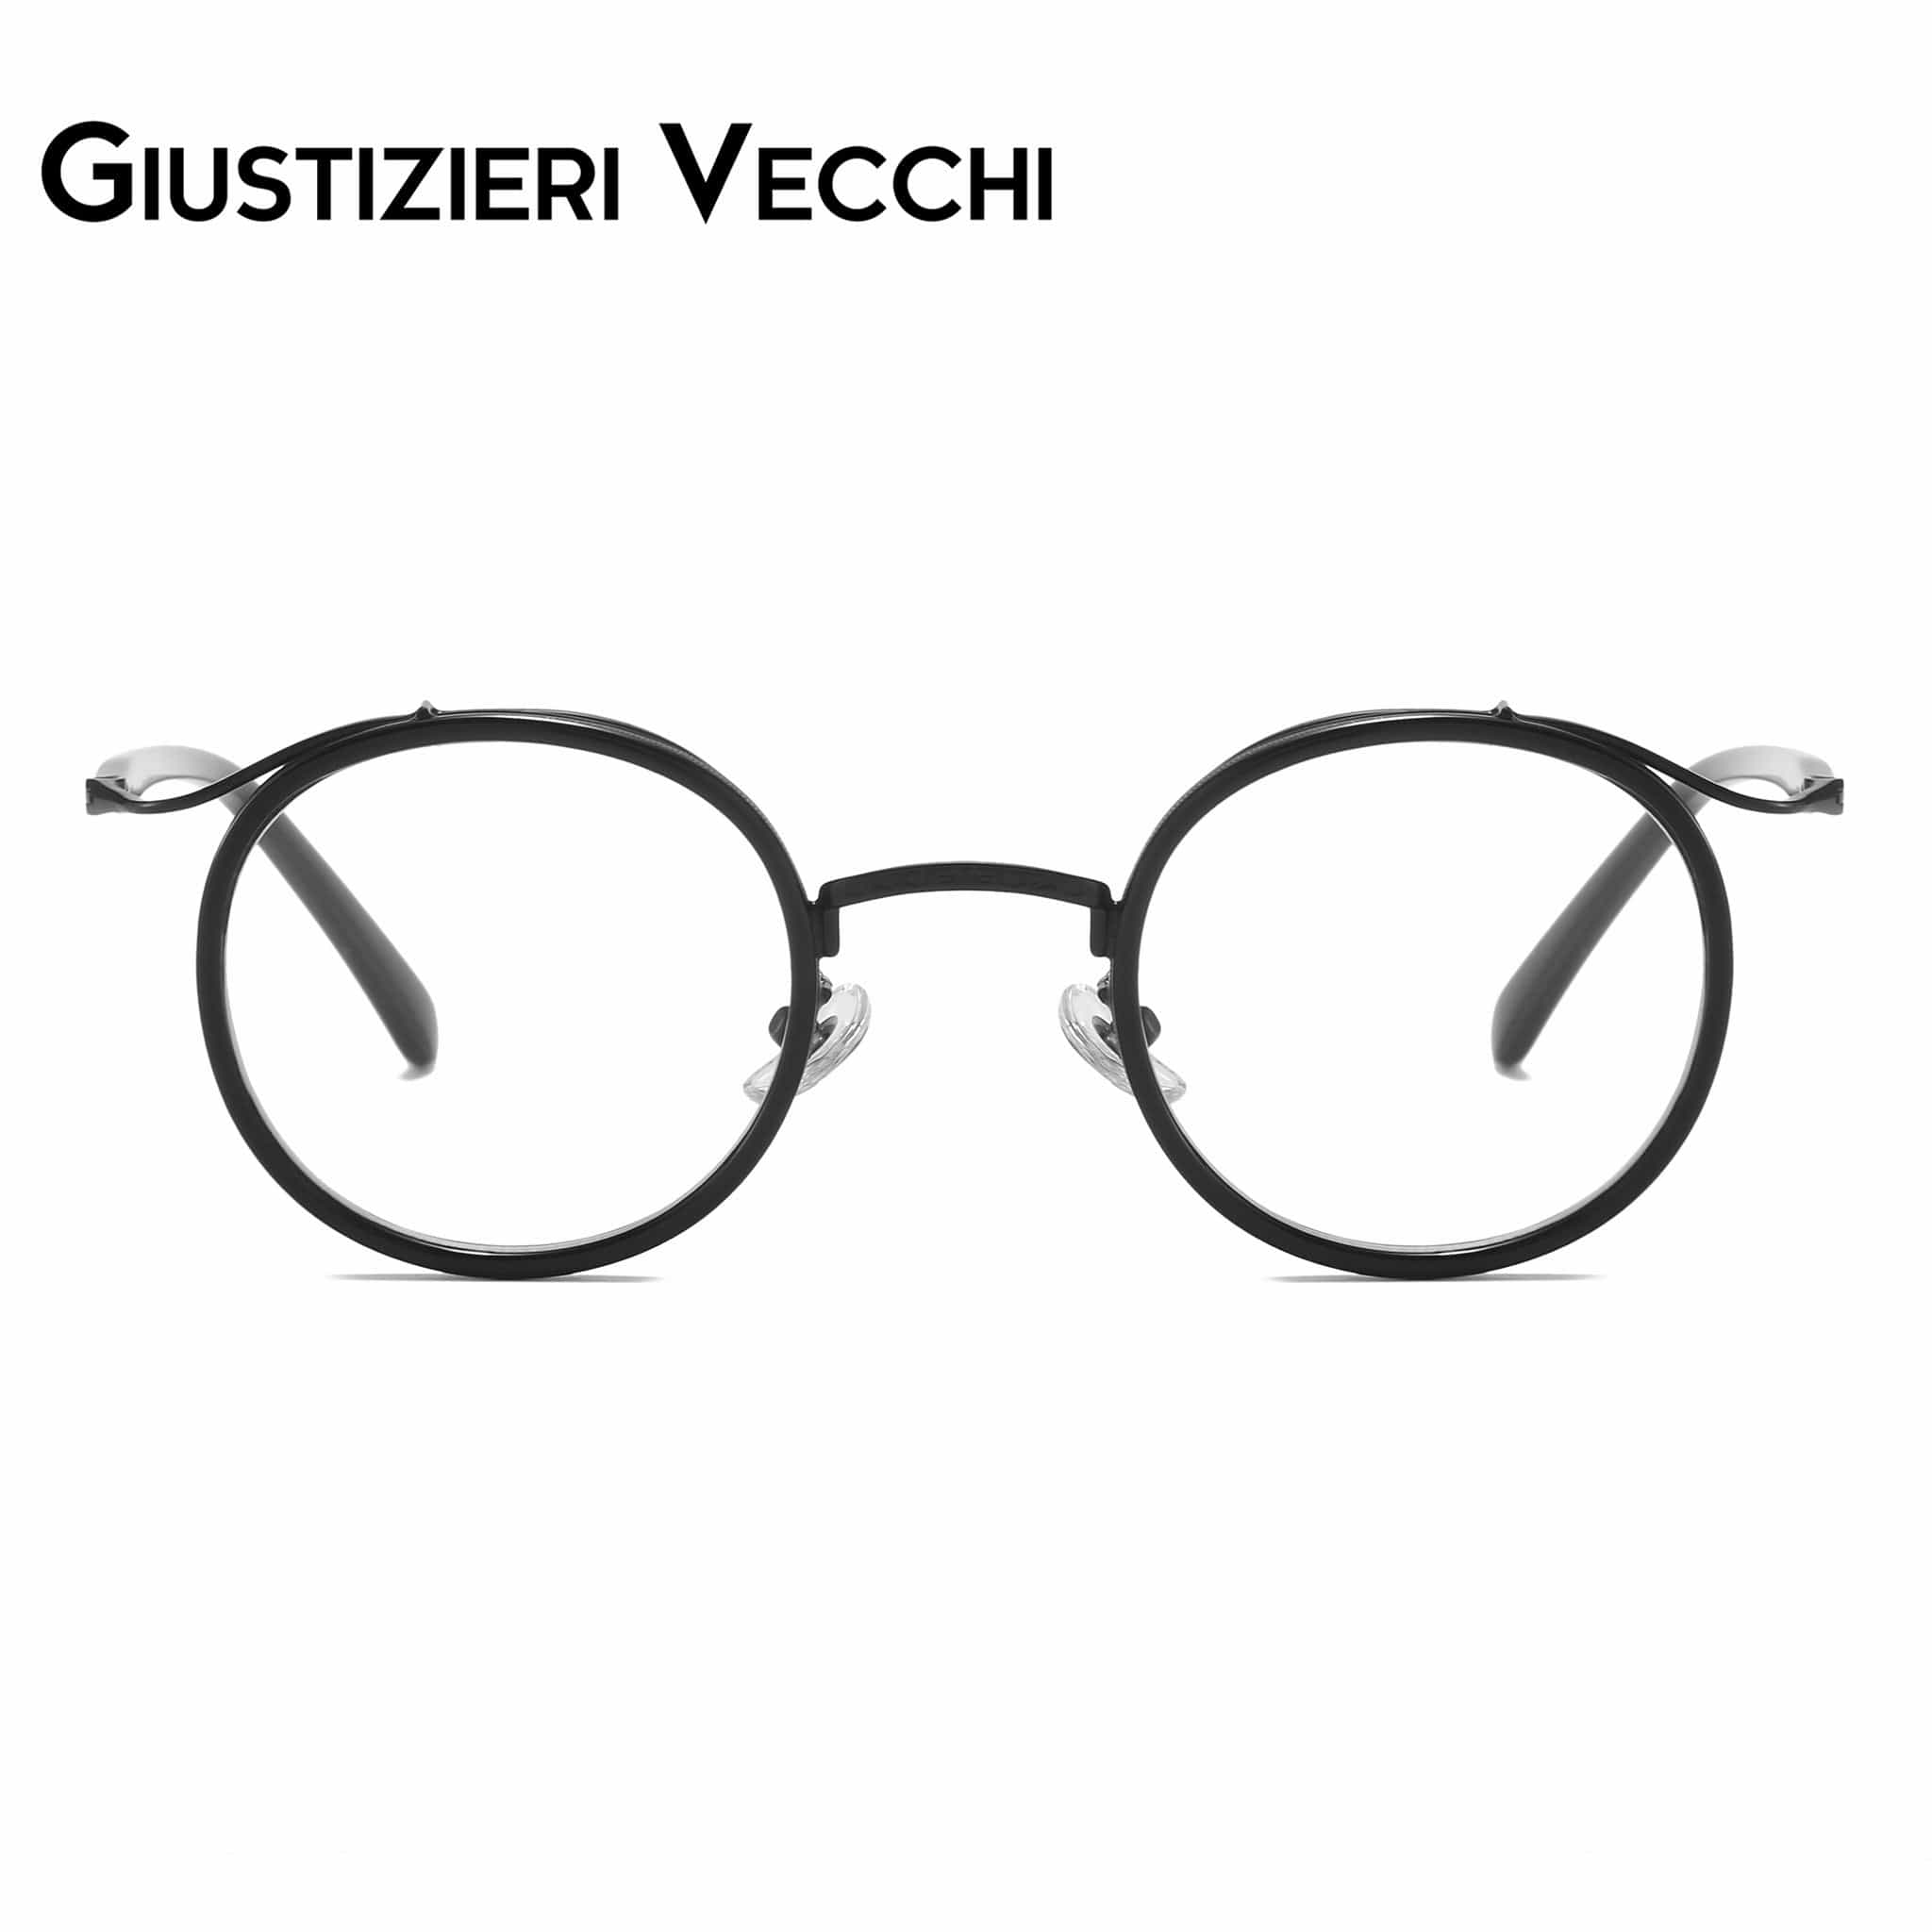 GIUSTIZIERI VECCHI Eyeglasses Small / Black Grapevine Uno